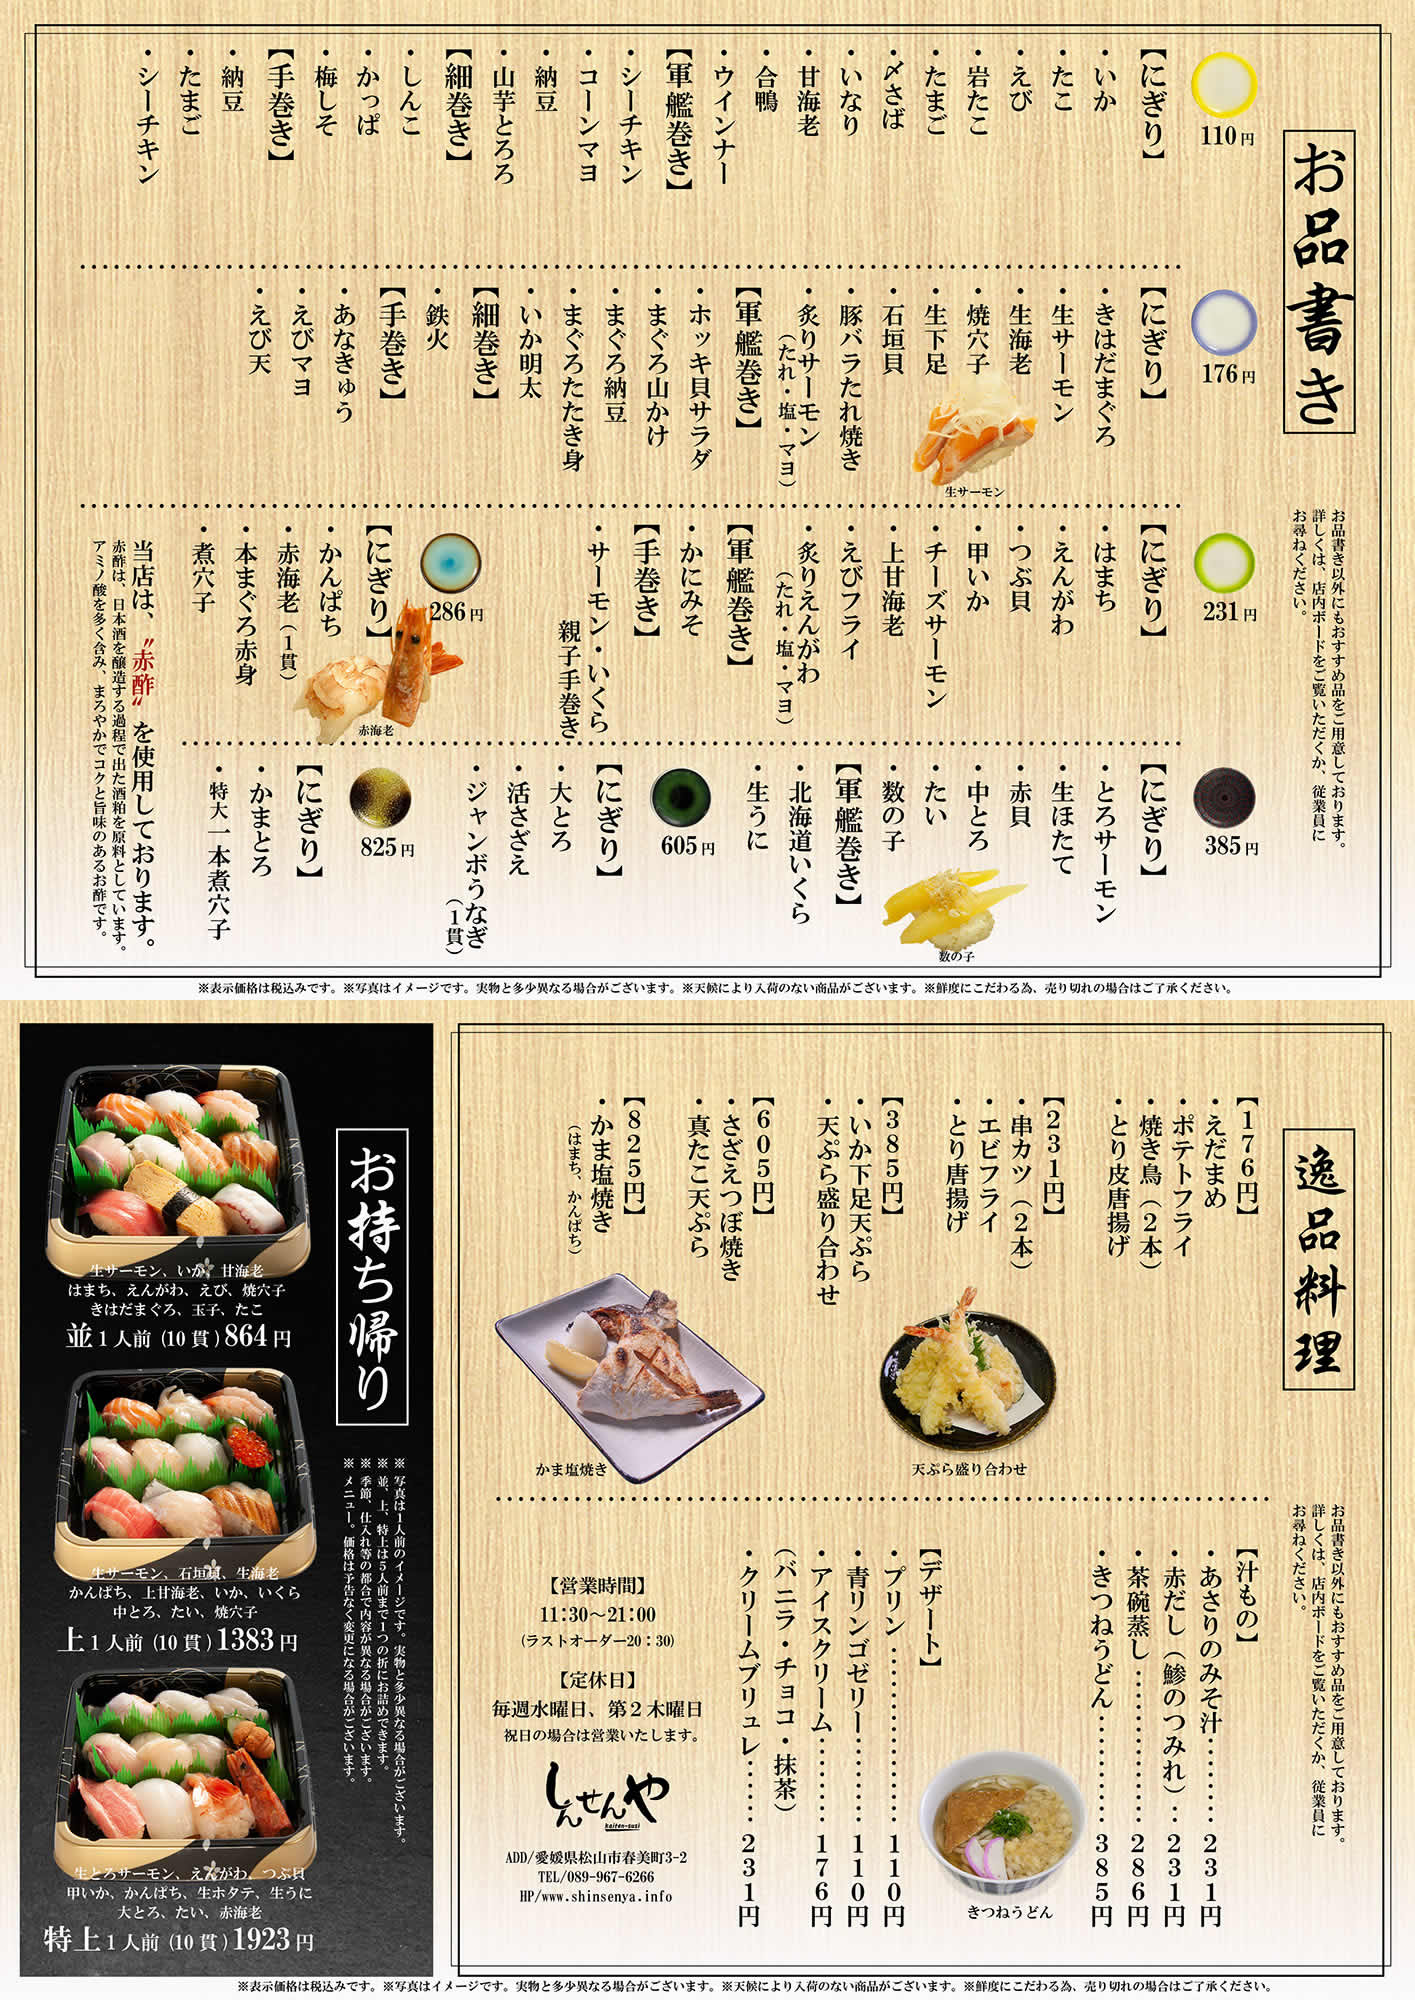 回転寿司しんせんや 愛媛県松山市 三津 魚の卸問屋から仕入れる新鮮な魚をネタに 四国で初めて赤酢を使ったシャリ